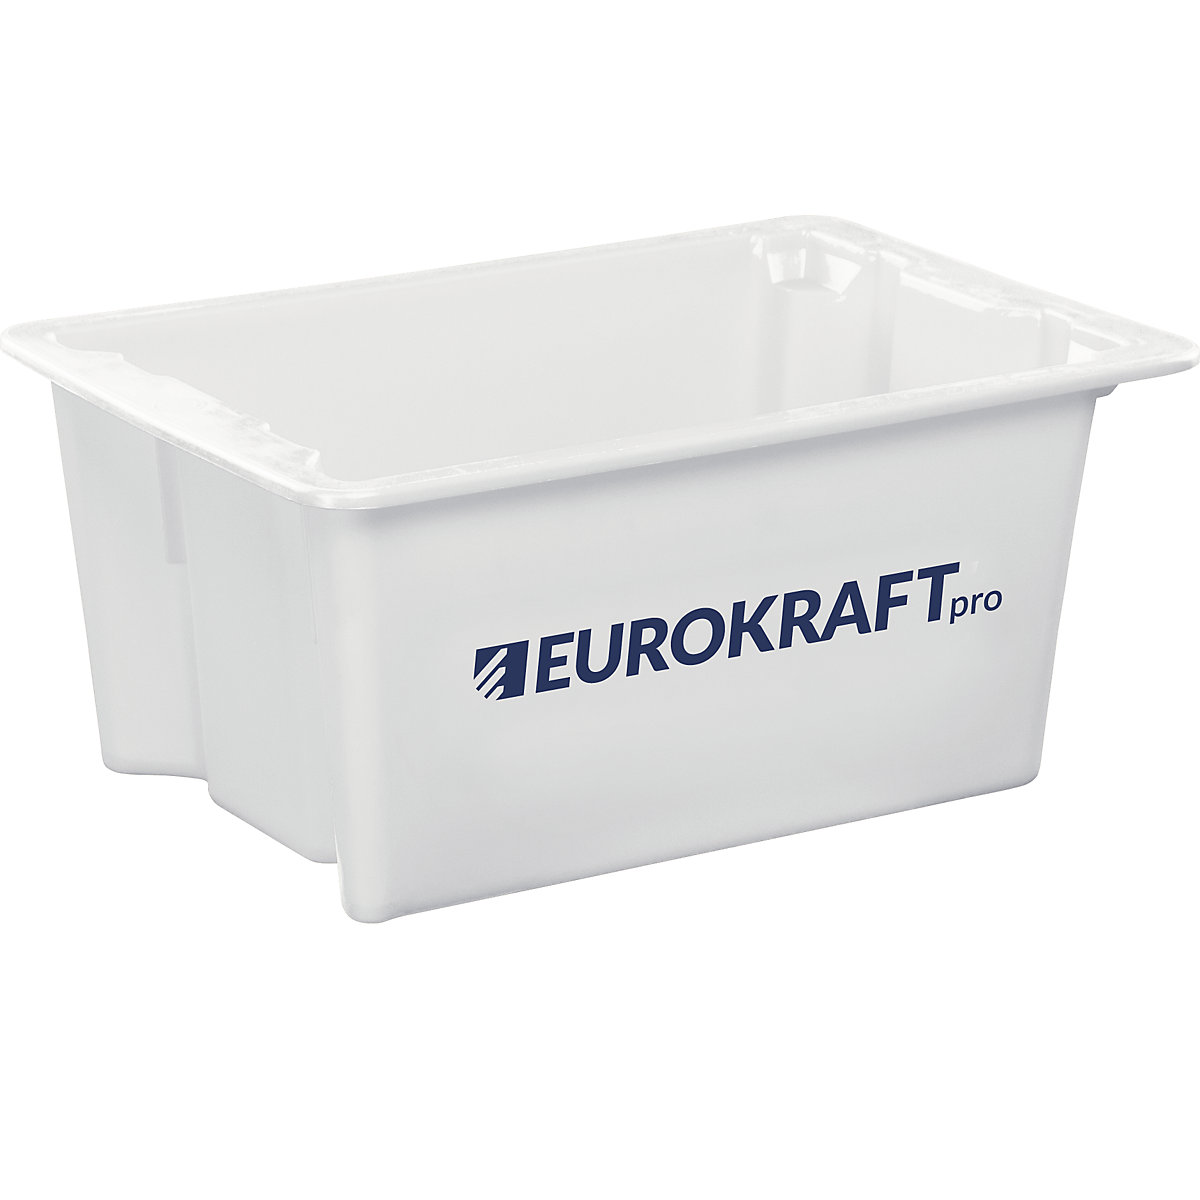 EUROKRAFTpro – Obrotowy pojemnik do ustawiania w stos z polipropylenu dopuszczonego do kontaktu z żywnością, poj. 6 l, opak. 4 szt., ścianki i dno zamknięte, kolor naturalny